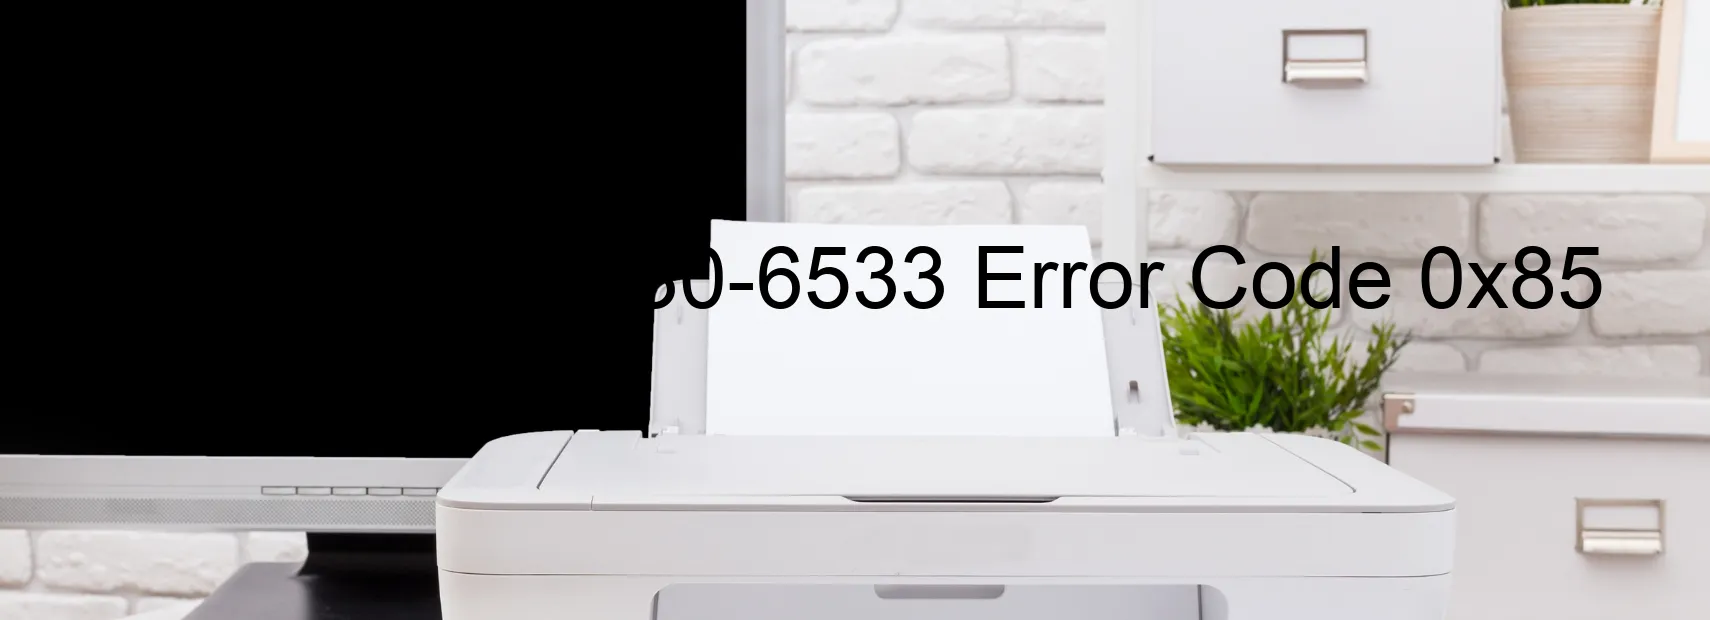 Epson WF-6530-6533 Error Code 0x85 Part 18223